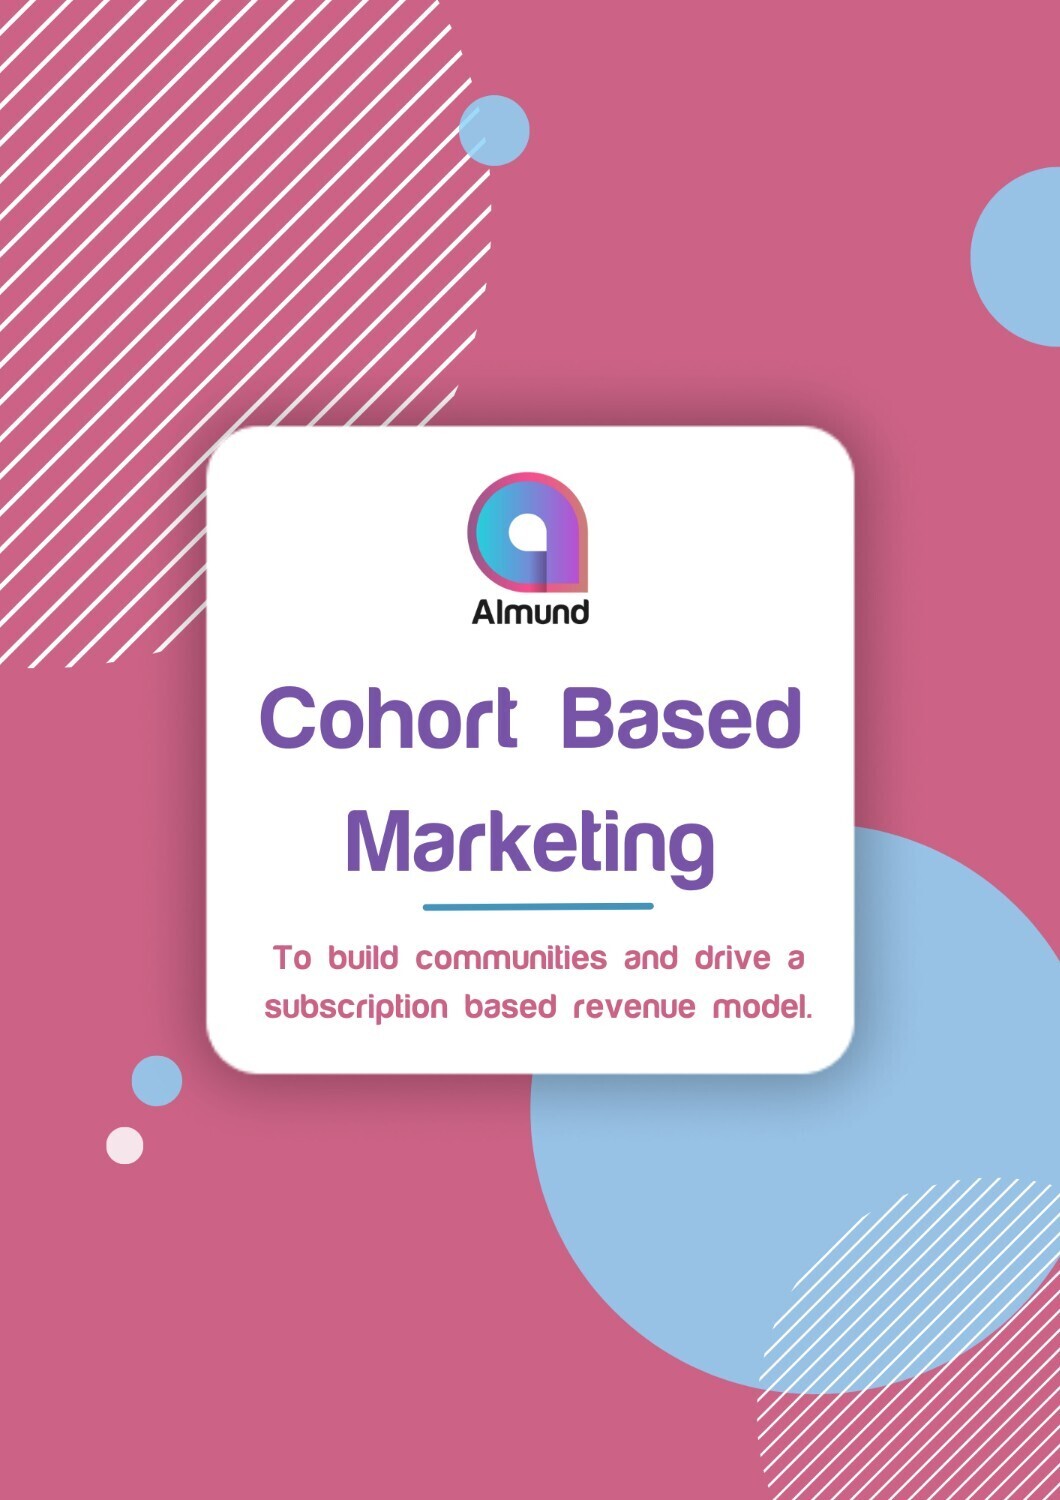 Cohort based marketing